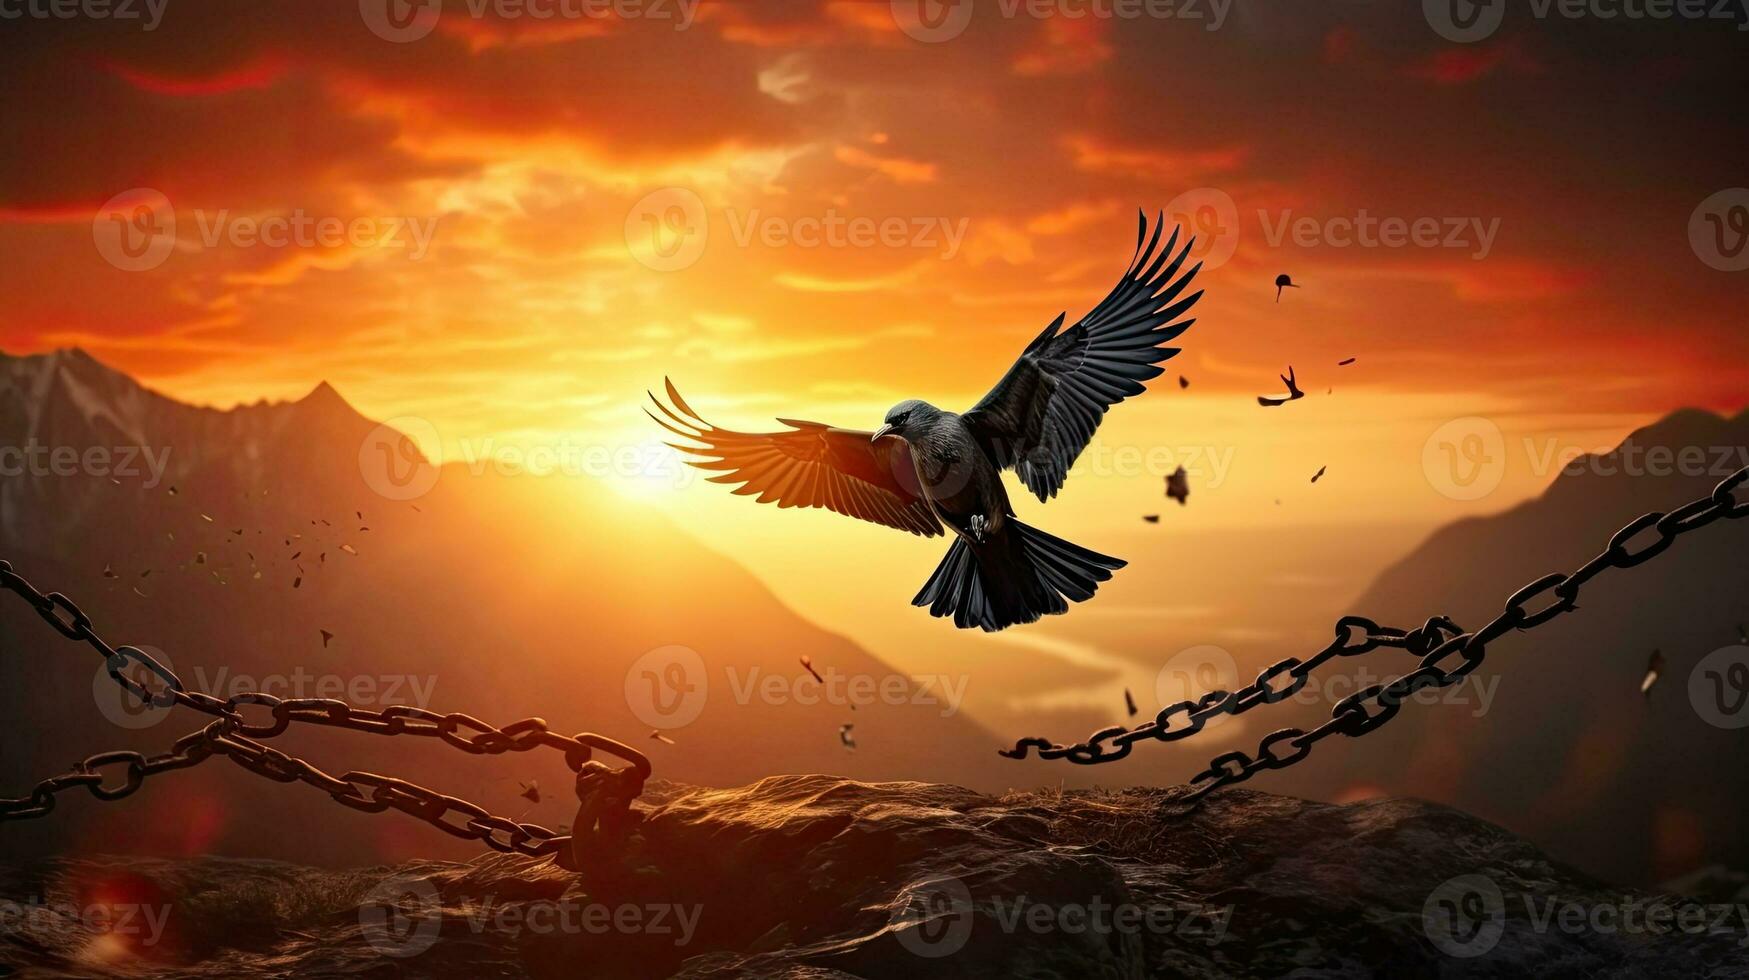 libertad representado por pájaro volador y roto cadenas en contra puesta de sol montaña fondo foto